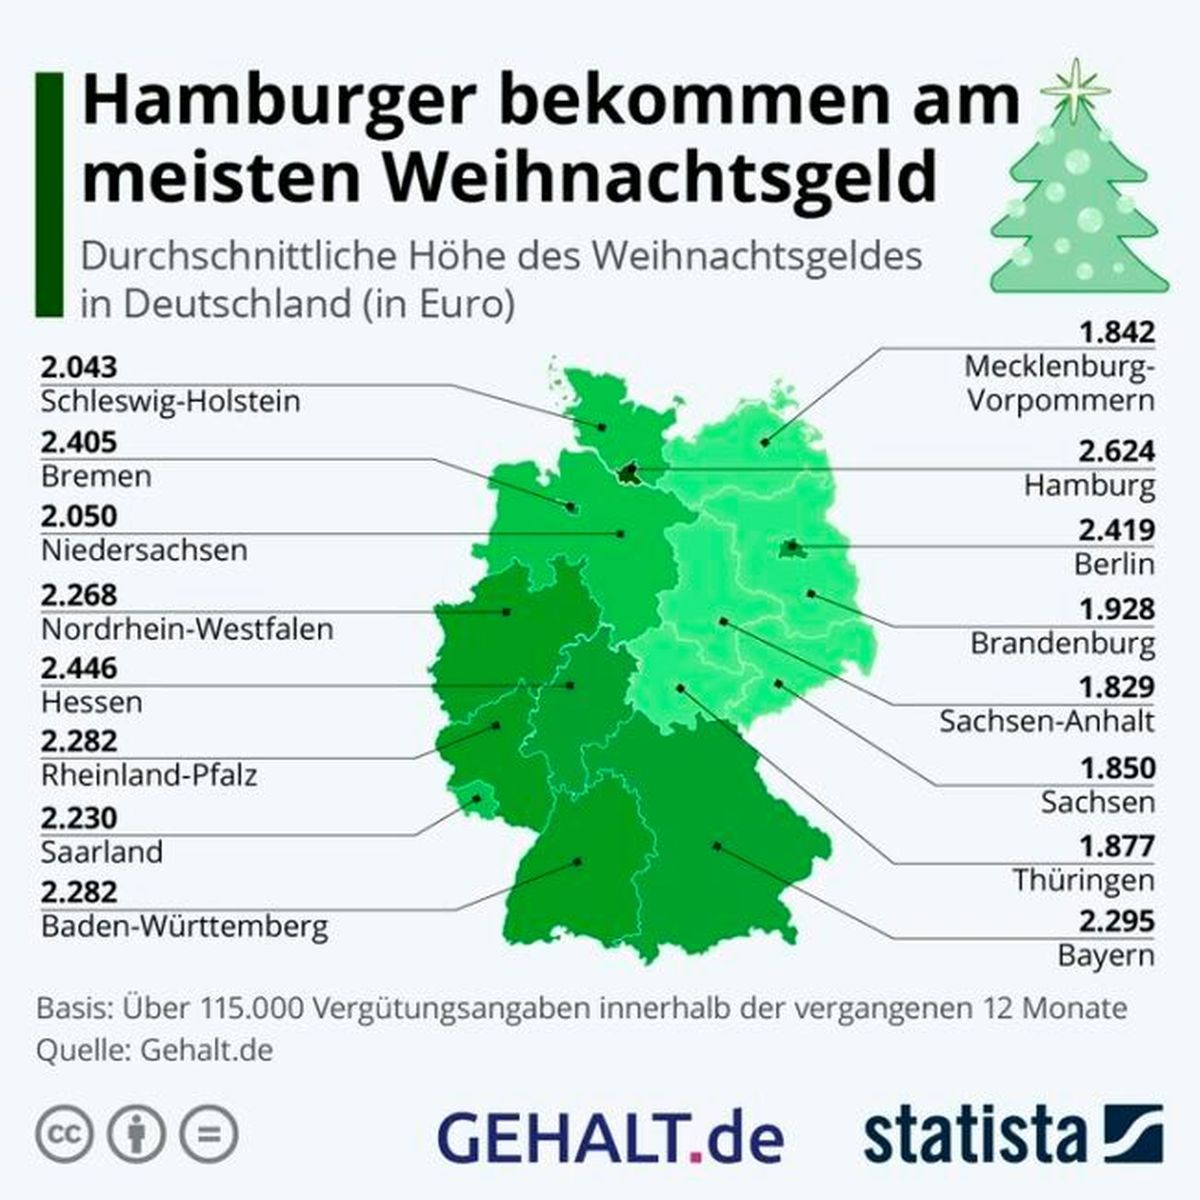 Die durchschnittliche Höhe des Weihnachtsgeldes in Deutschland